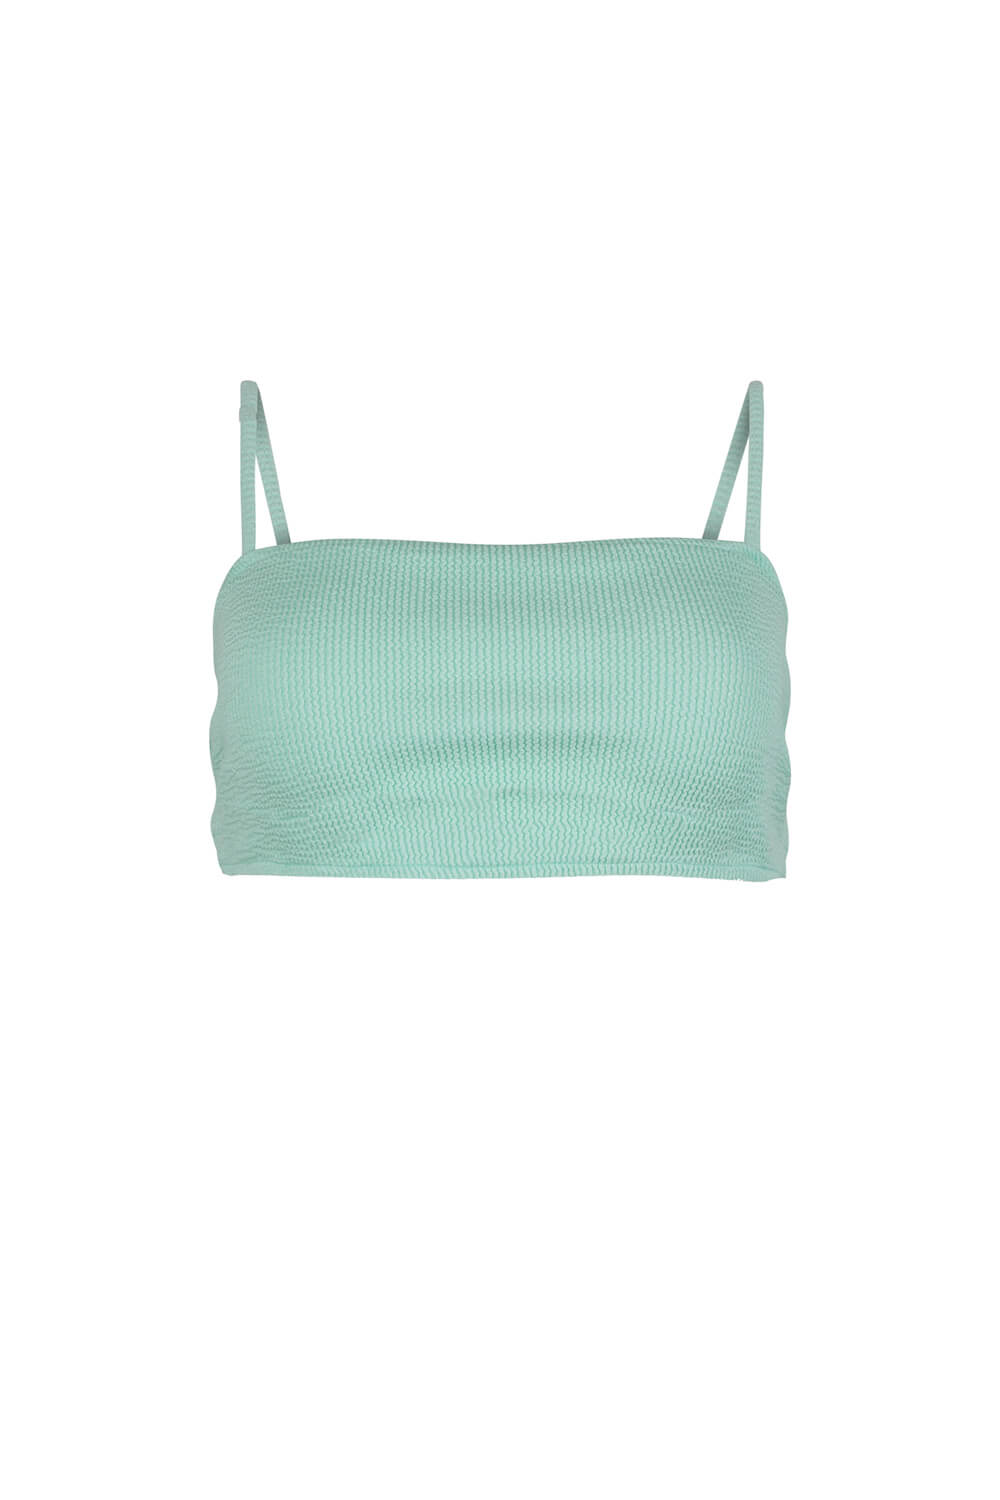 The Mila bikini top in aqua texture fabric.